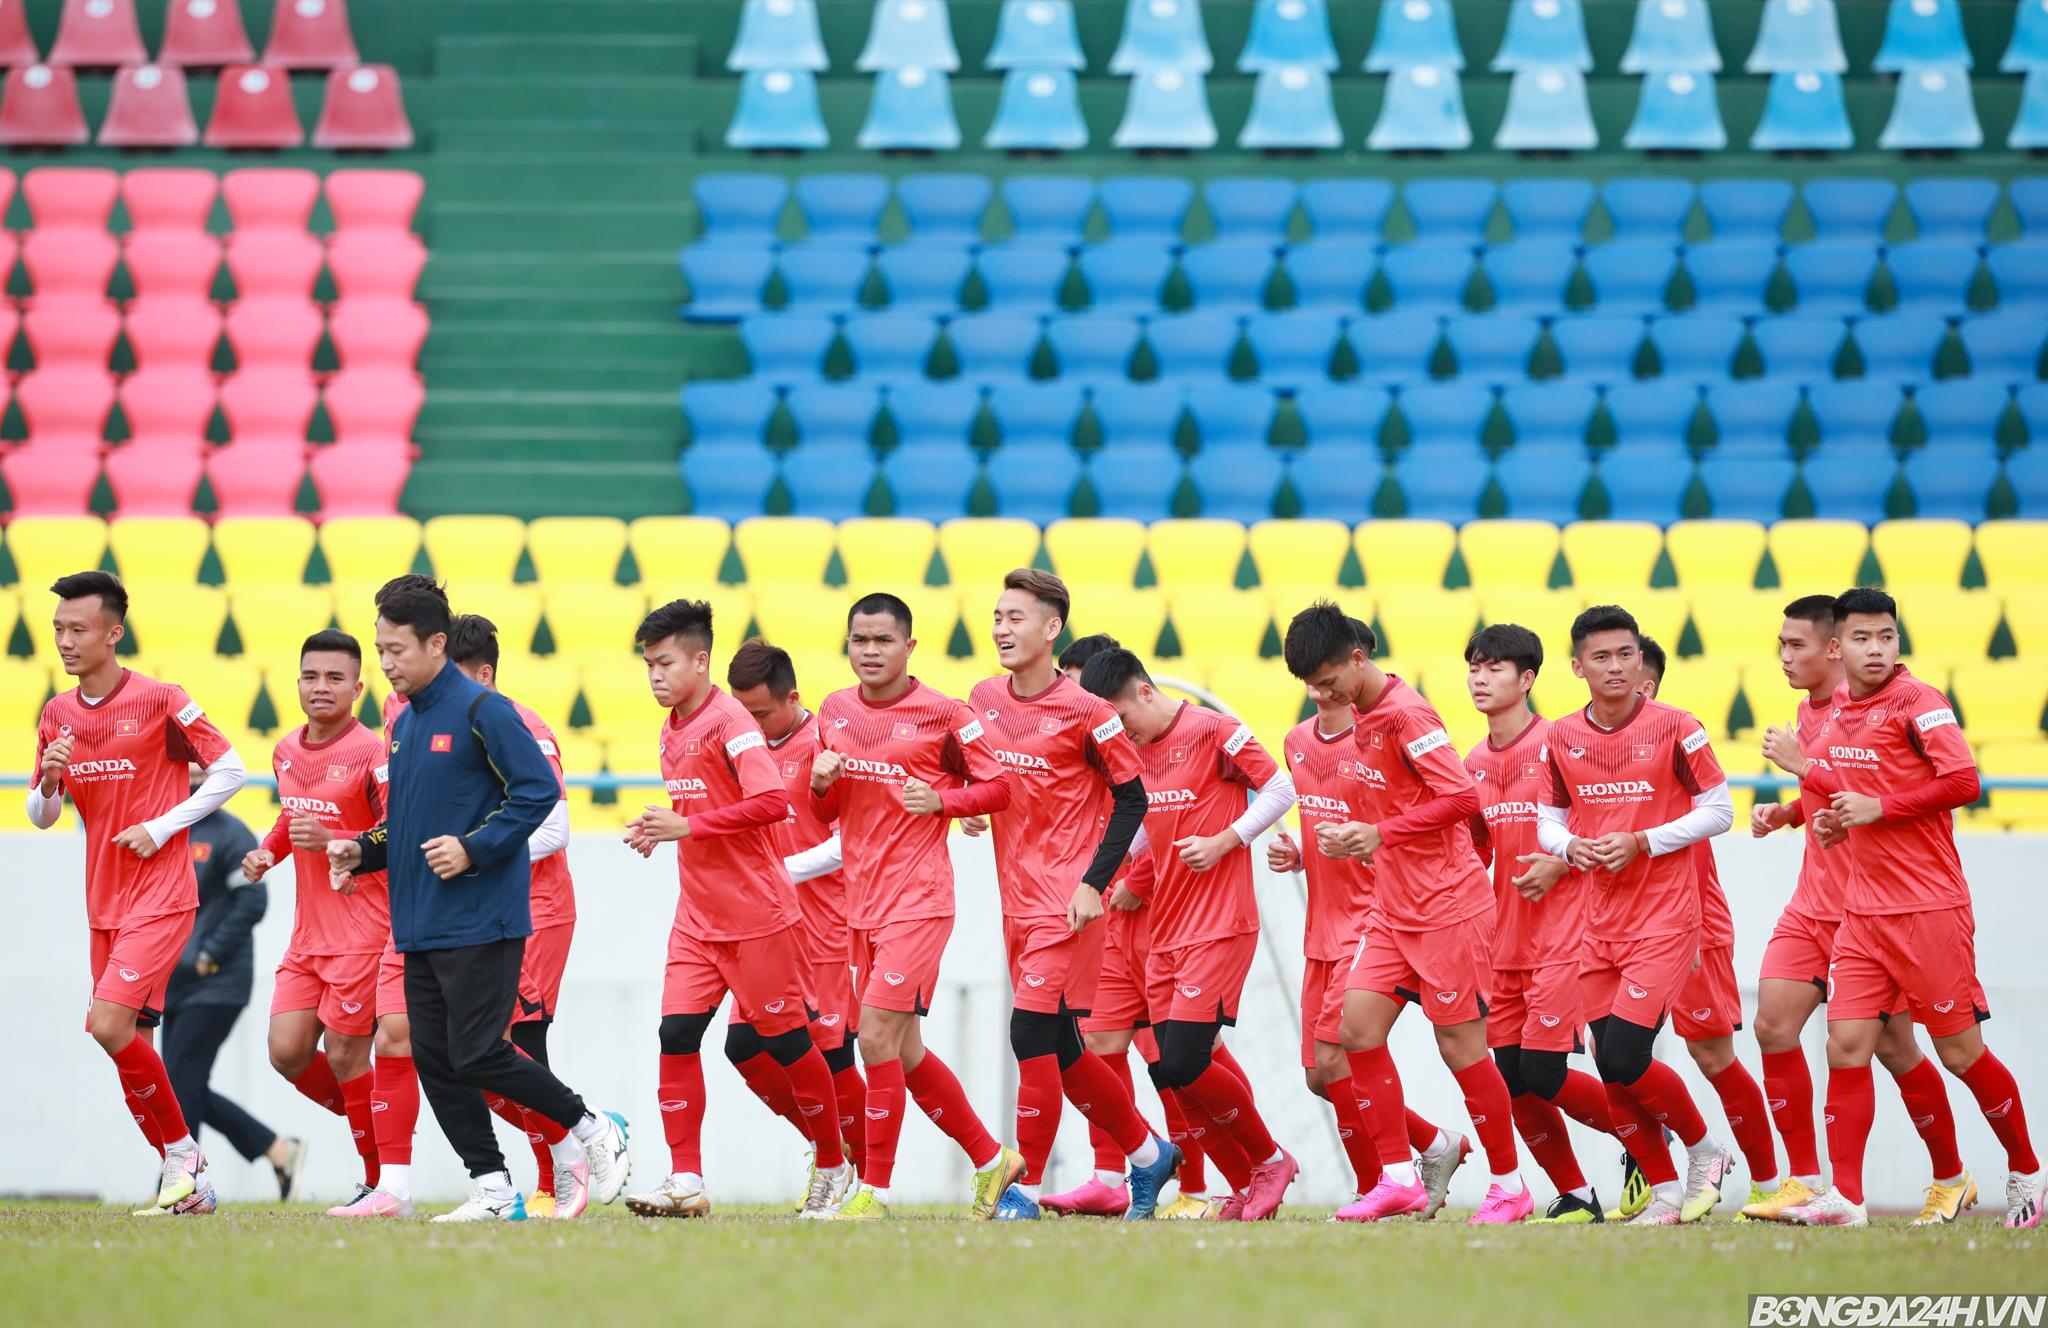 Giao hữu lần 2 với đội tuyển quốc gia: Cơ hội nào cho U22 Việt Nam?